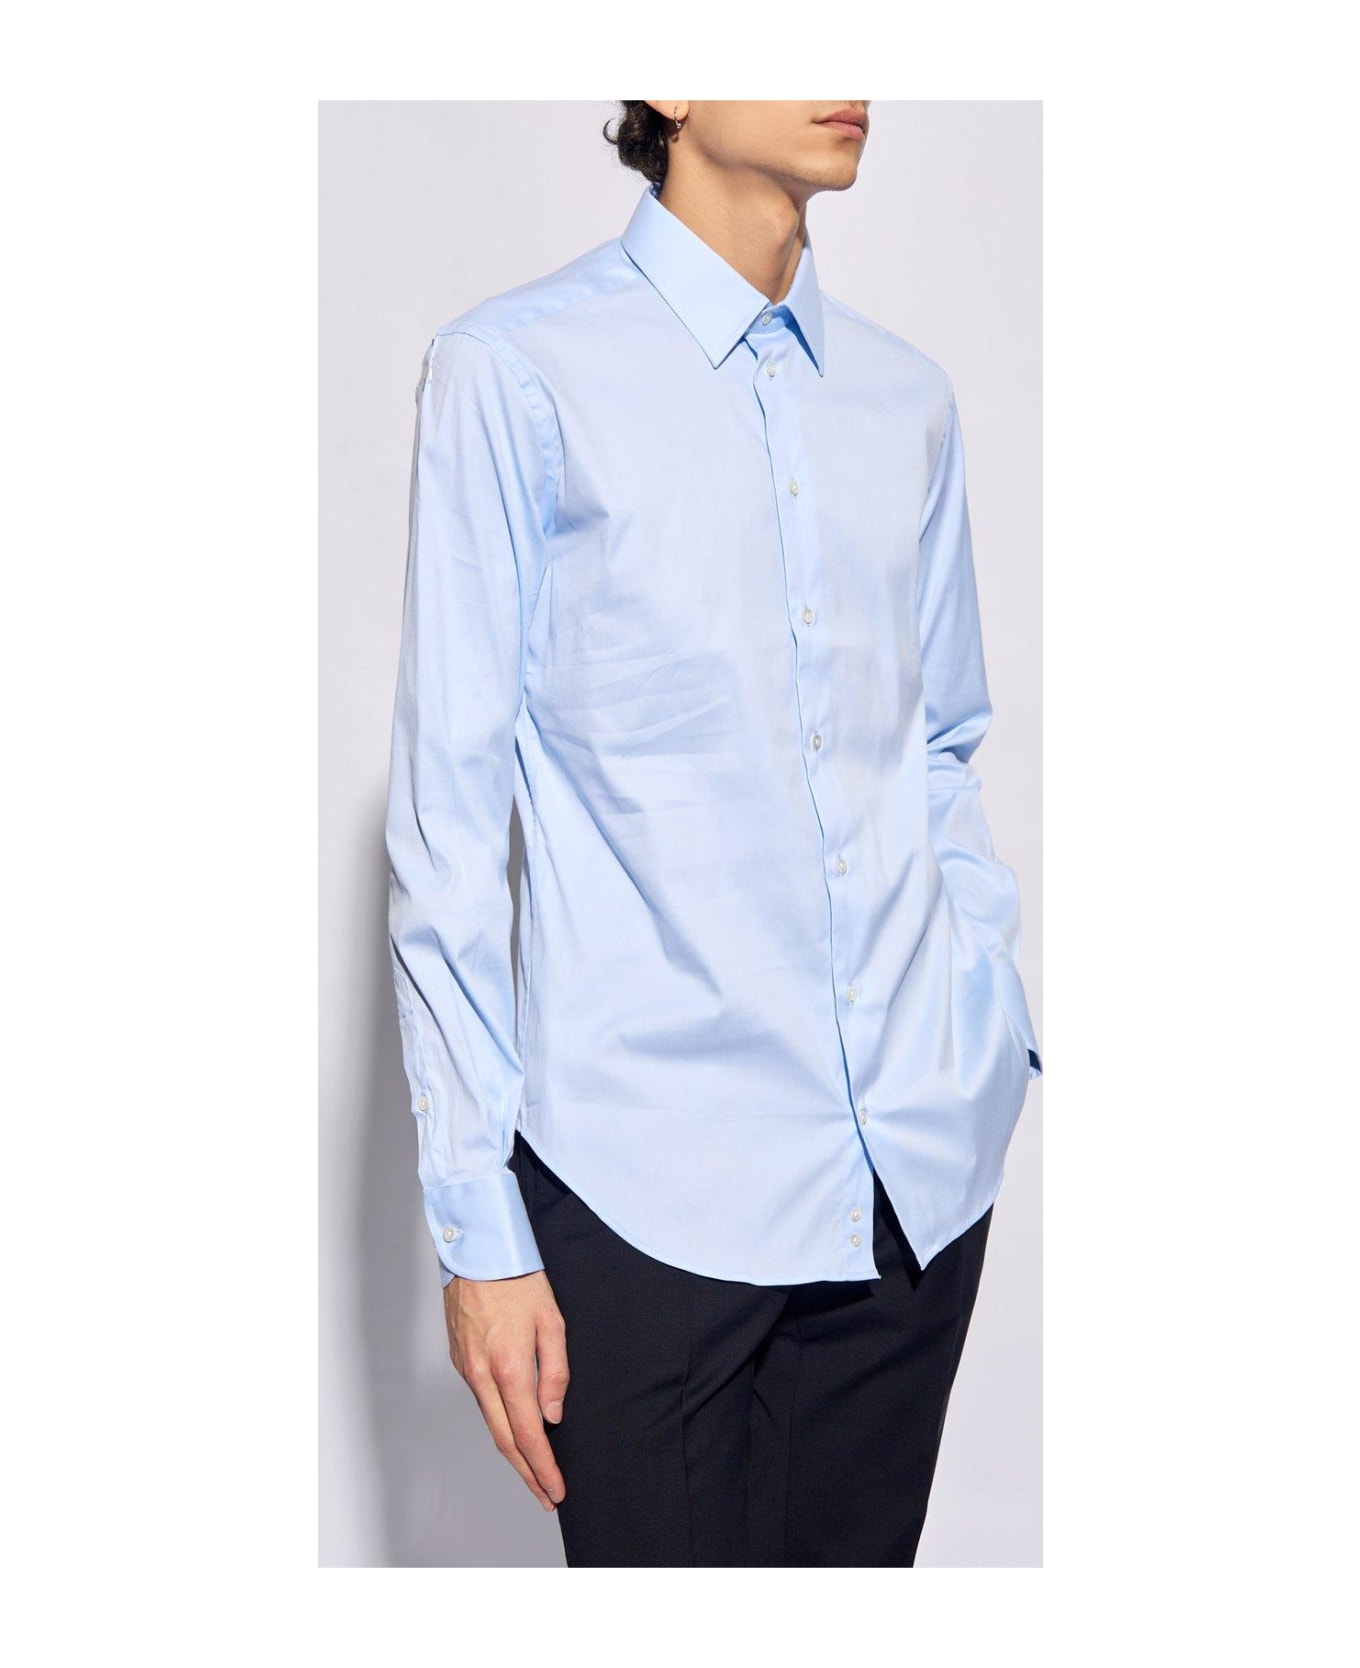 Emporio Armani Cotton Shirt - Azzurro シャツ